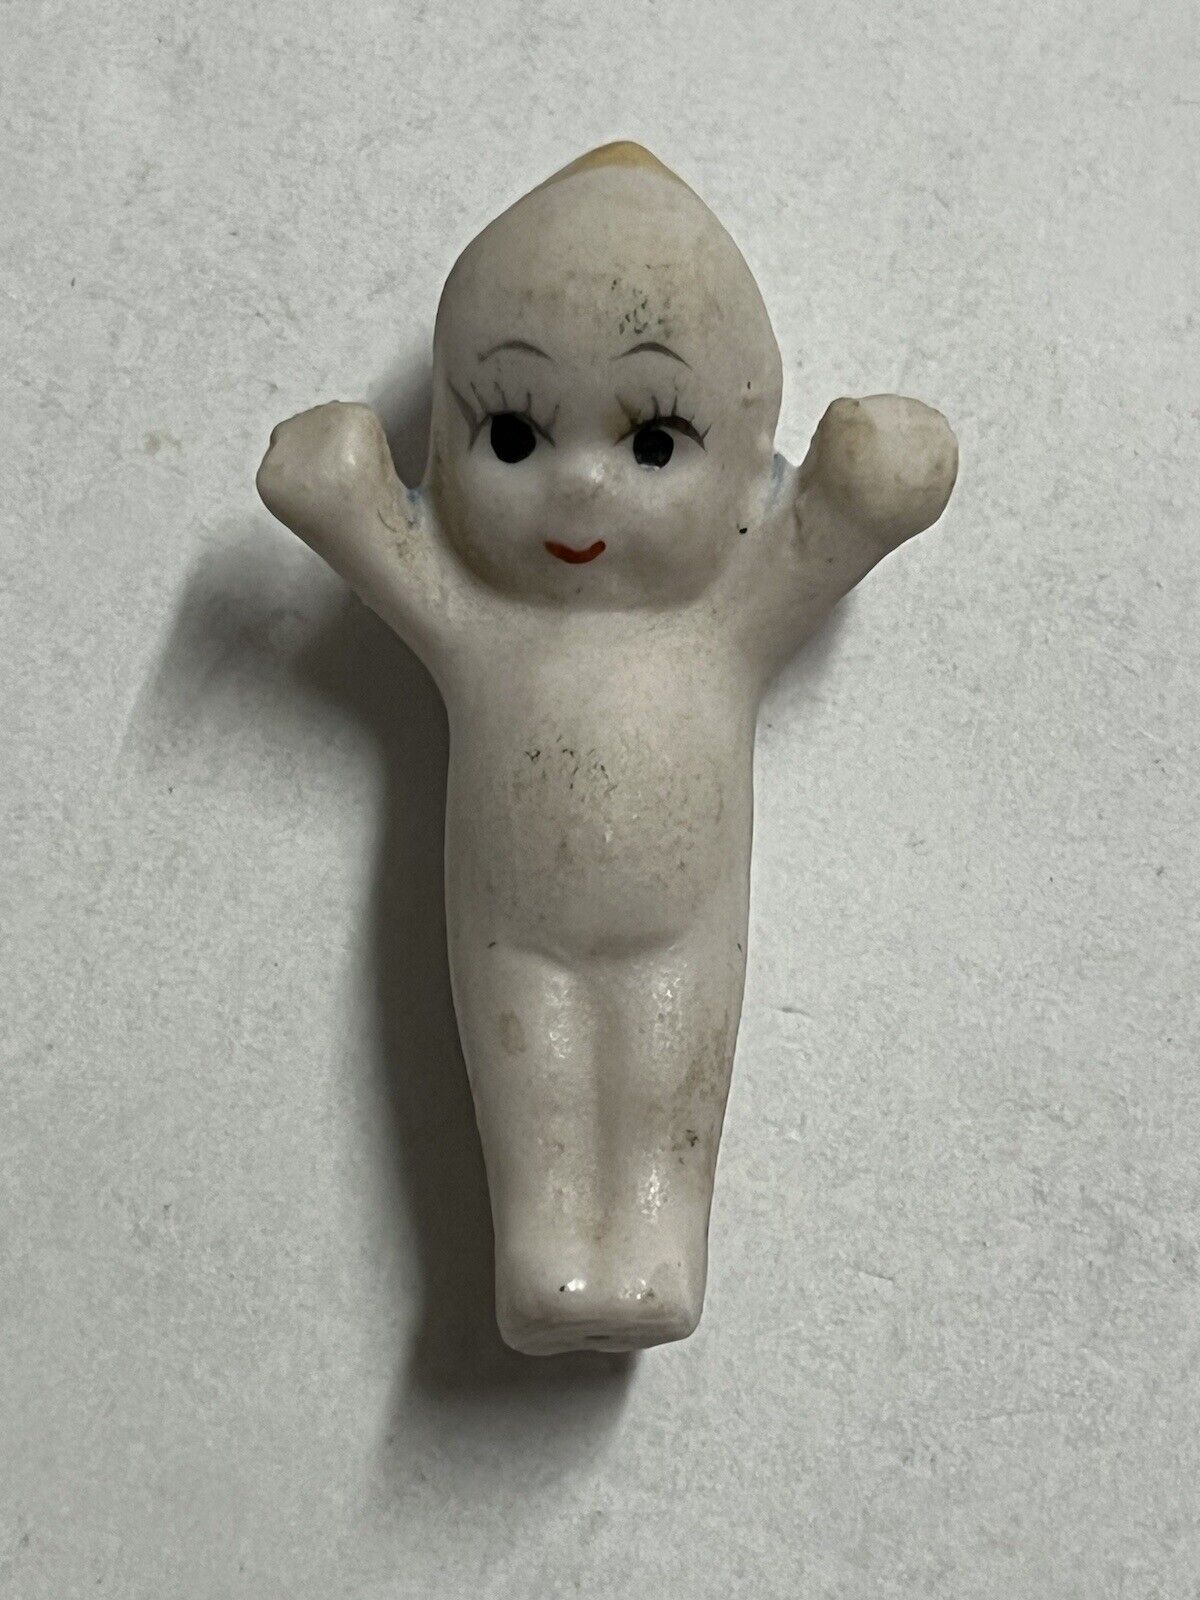 Vintage Porcelain Miniature Kewpie Figurine